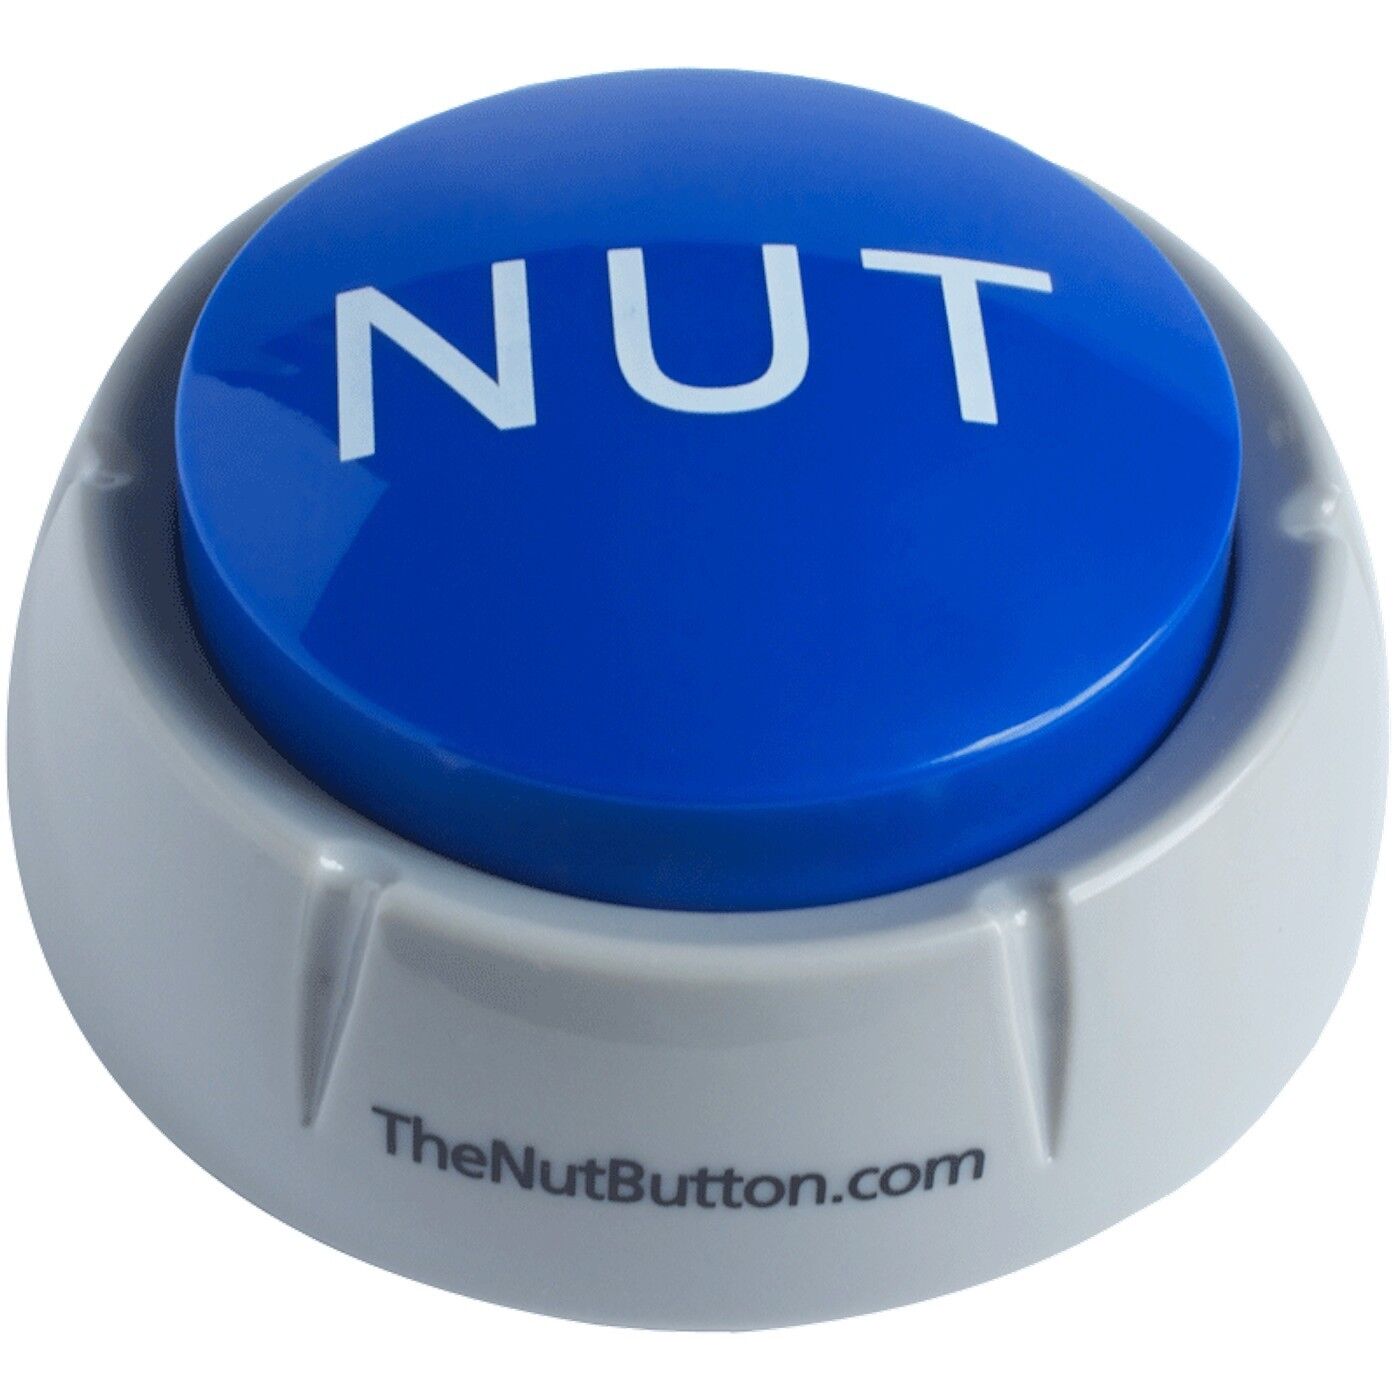 The Nut Button Meme - The Original Blue Button